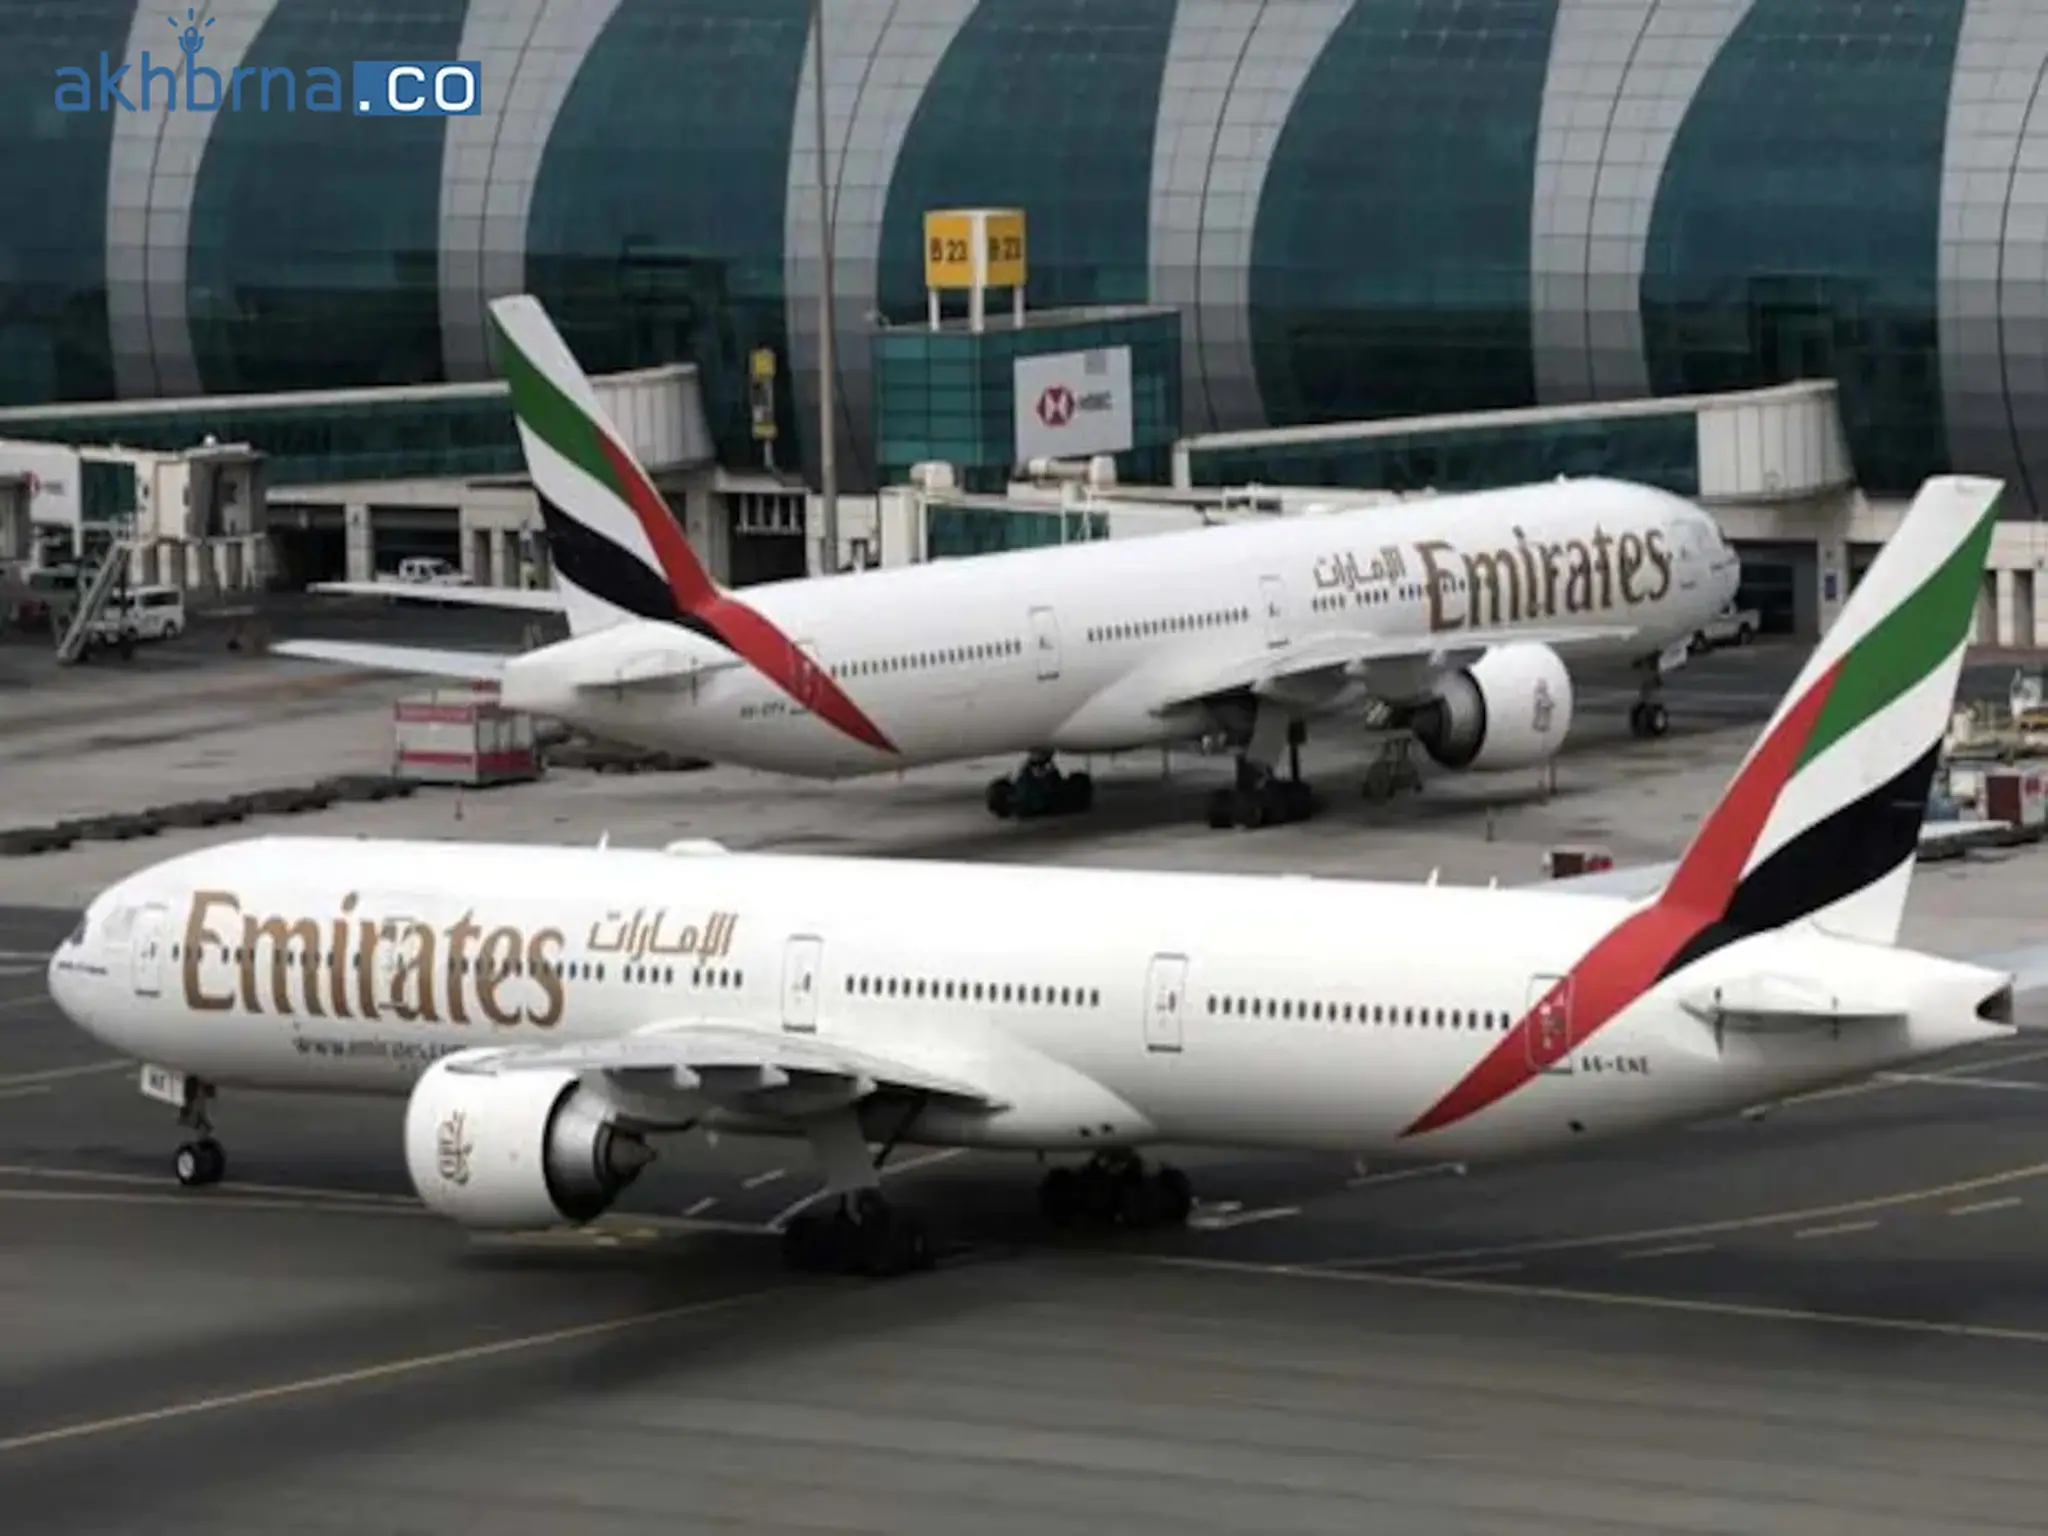  Emirates announces Premium Economy class on Dubai-India flights 